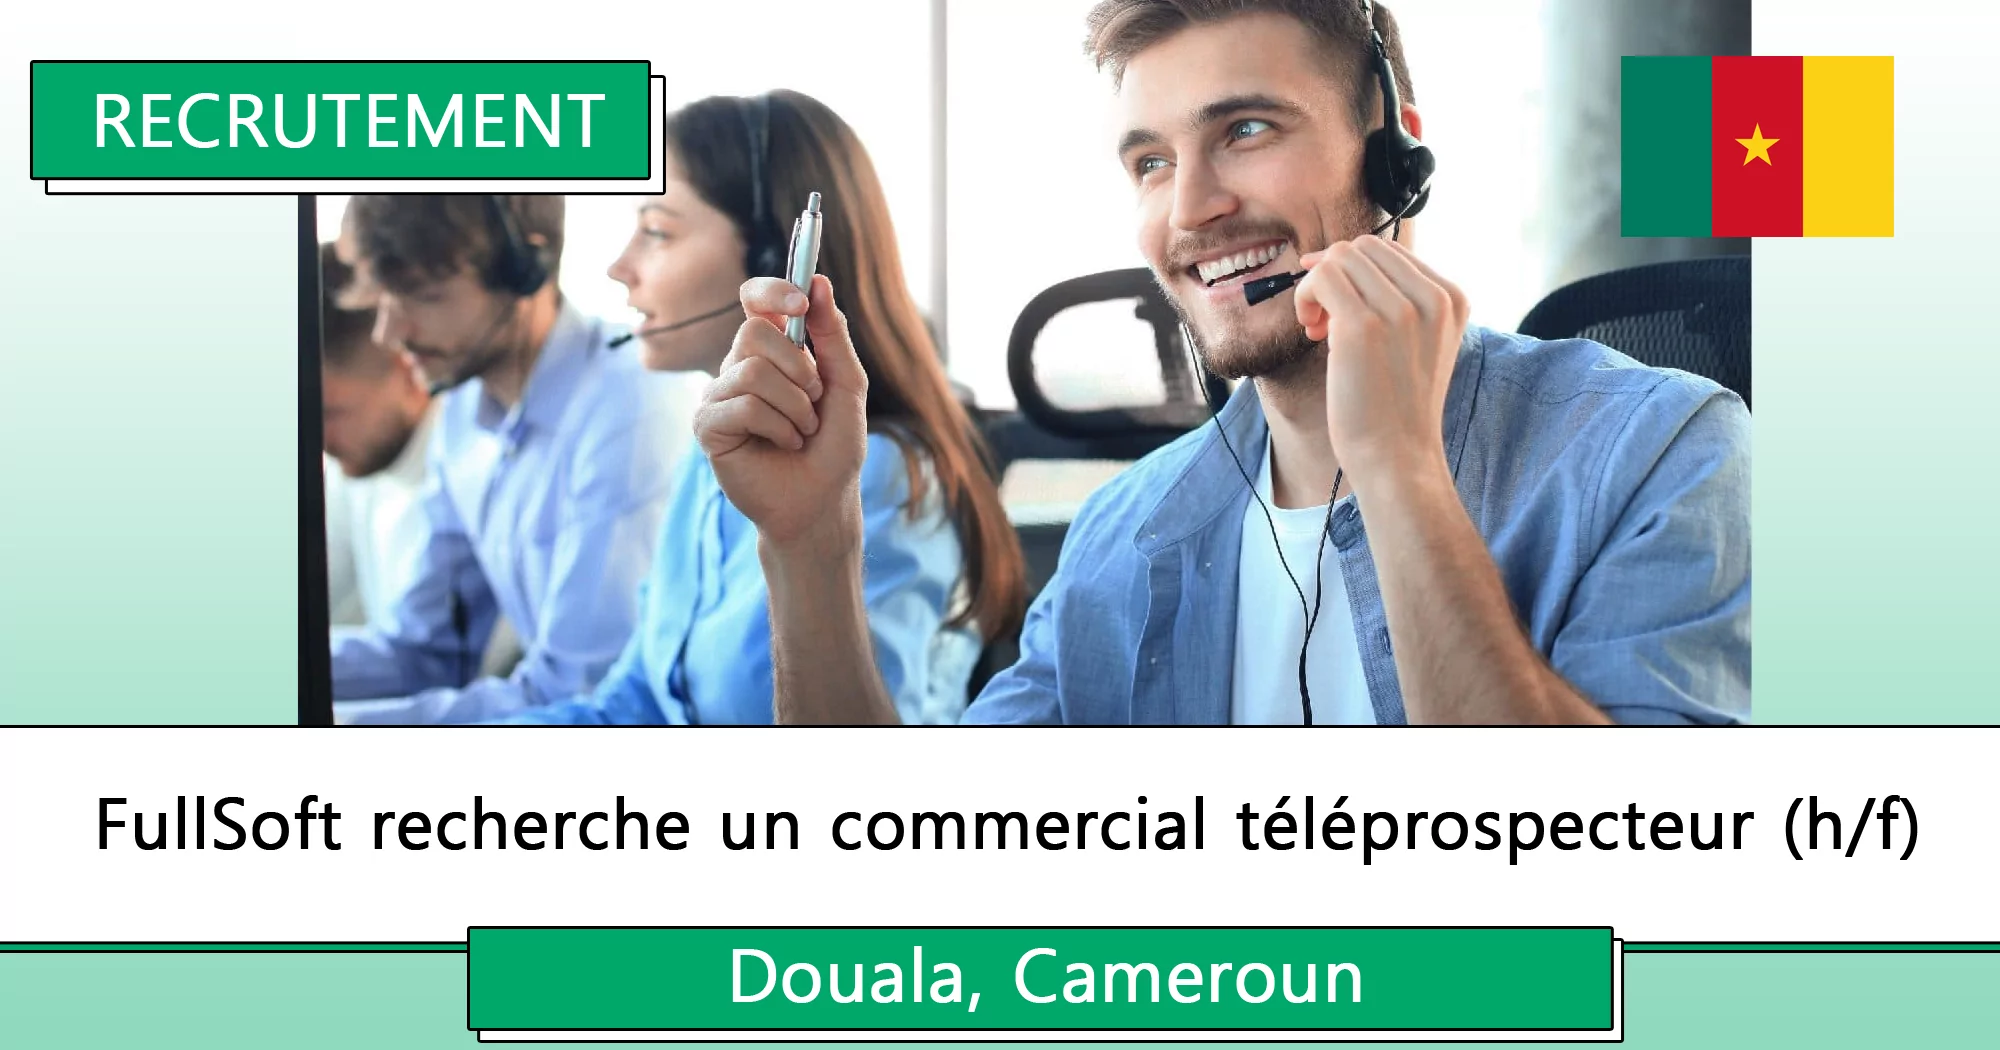 FullSoft recherche un commercial téléprospecteur (h/f), Douala, Cameroun